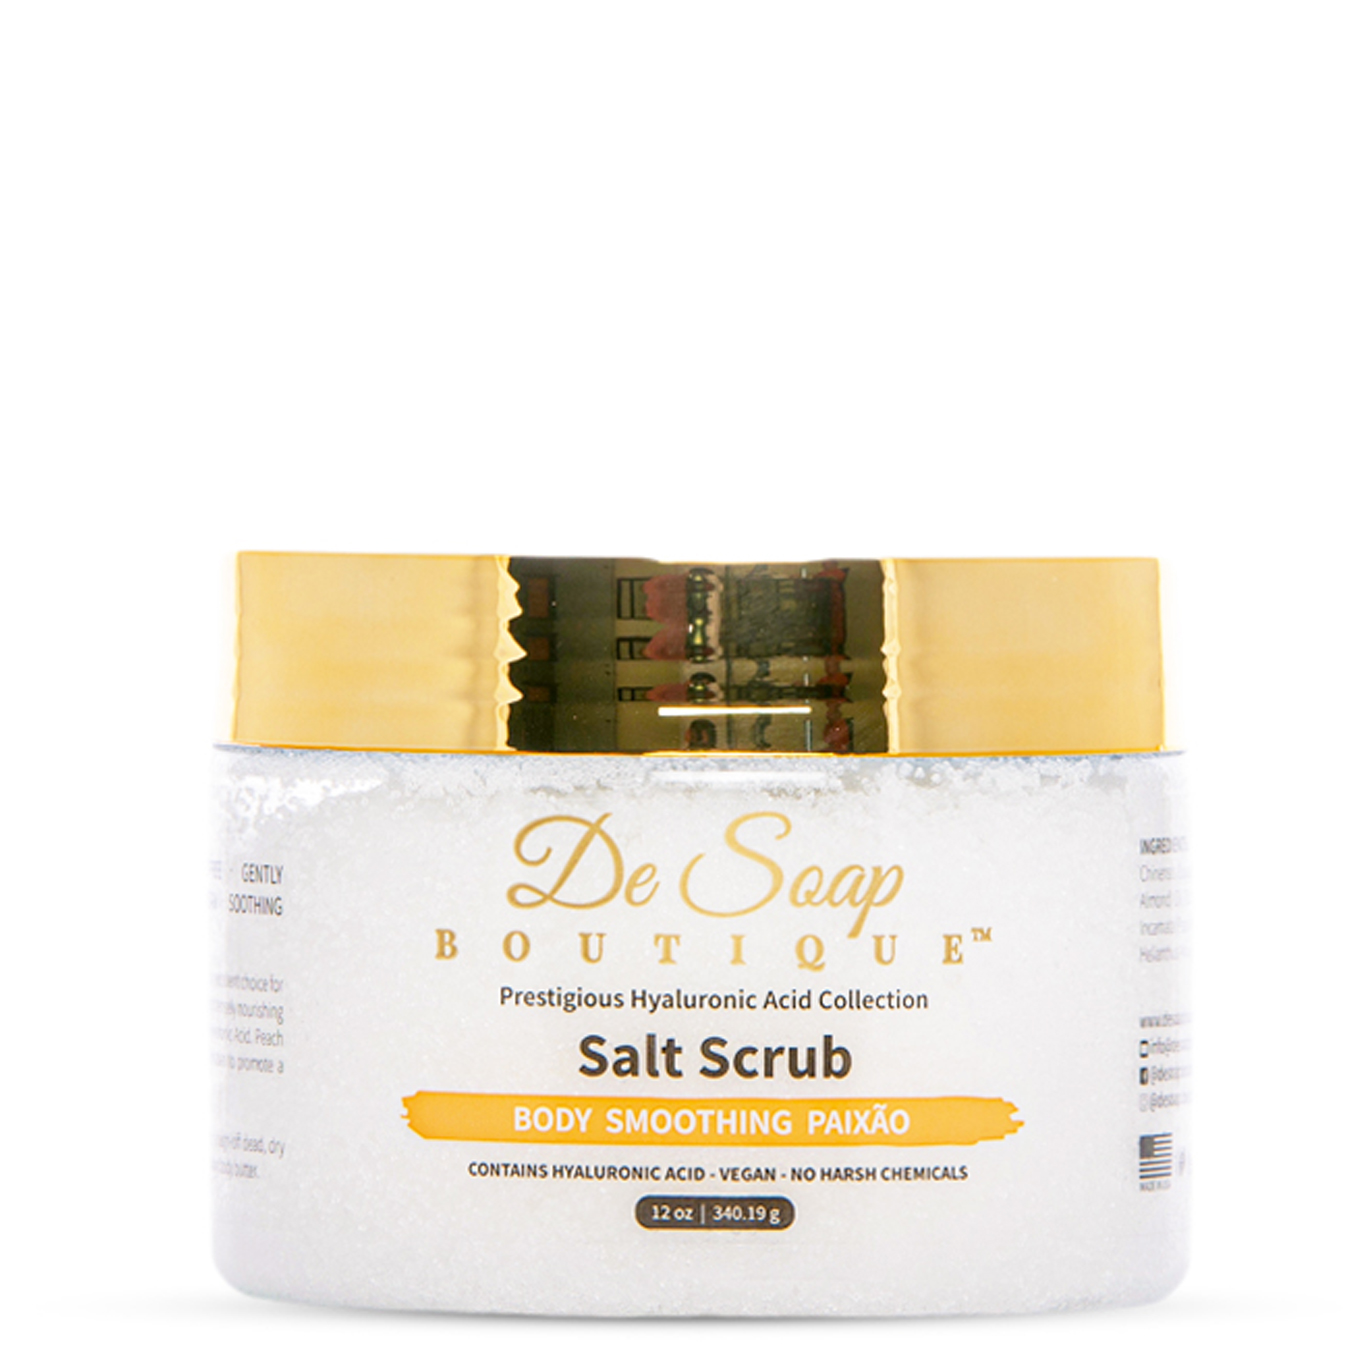 Body smoothing salt scrub paixao